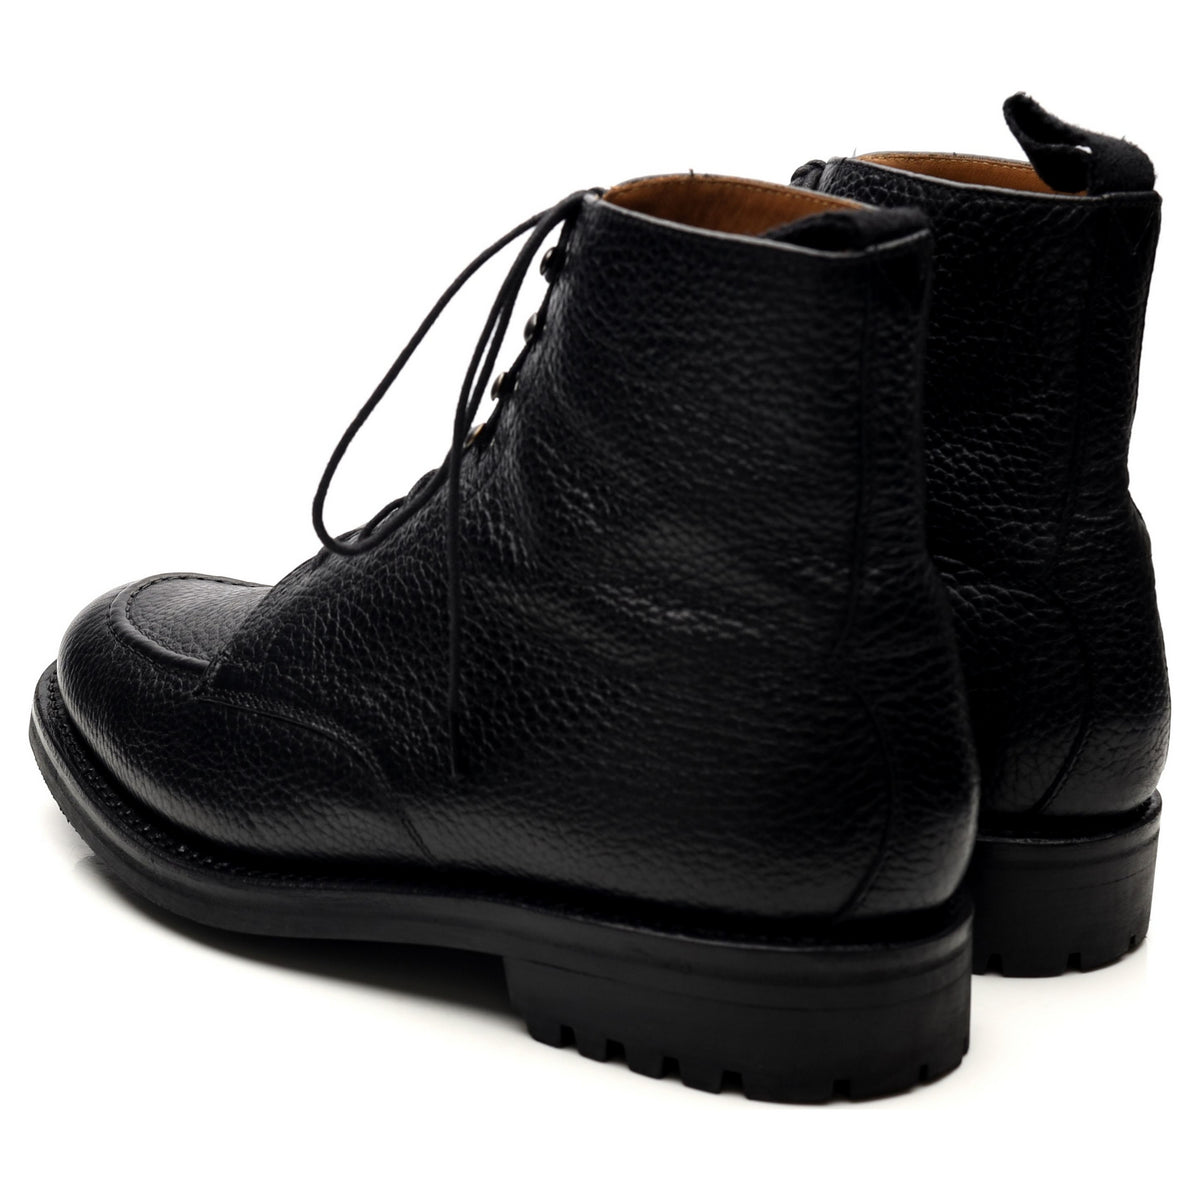 &#39;Sawyer&#39; Black Leather Apron Boots UK 8.5 G